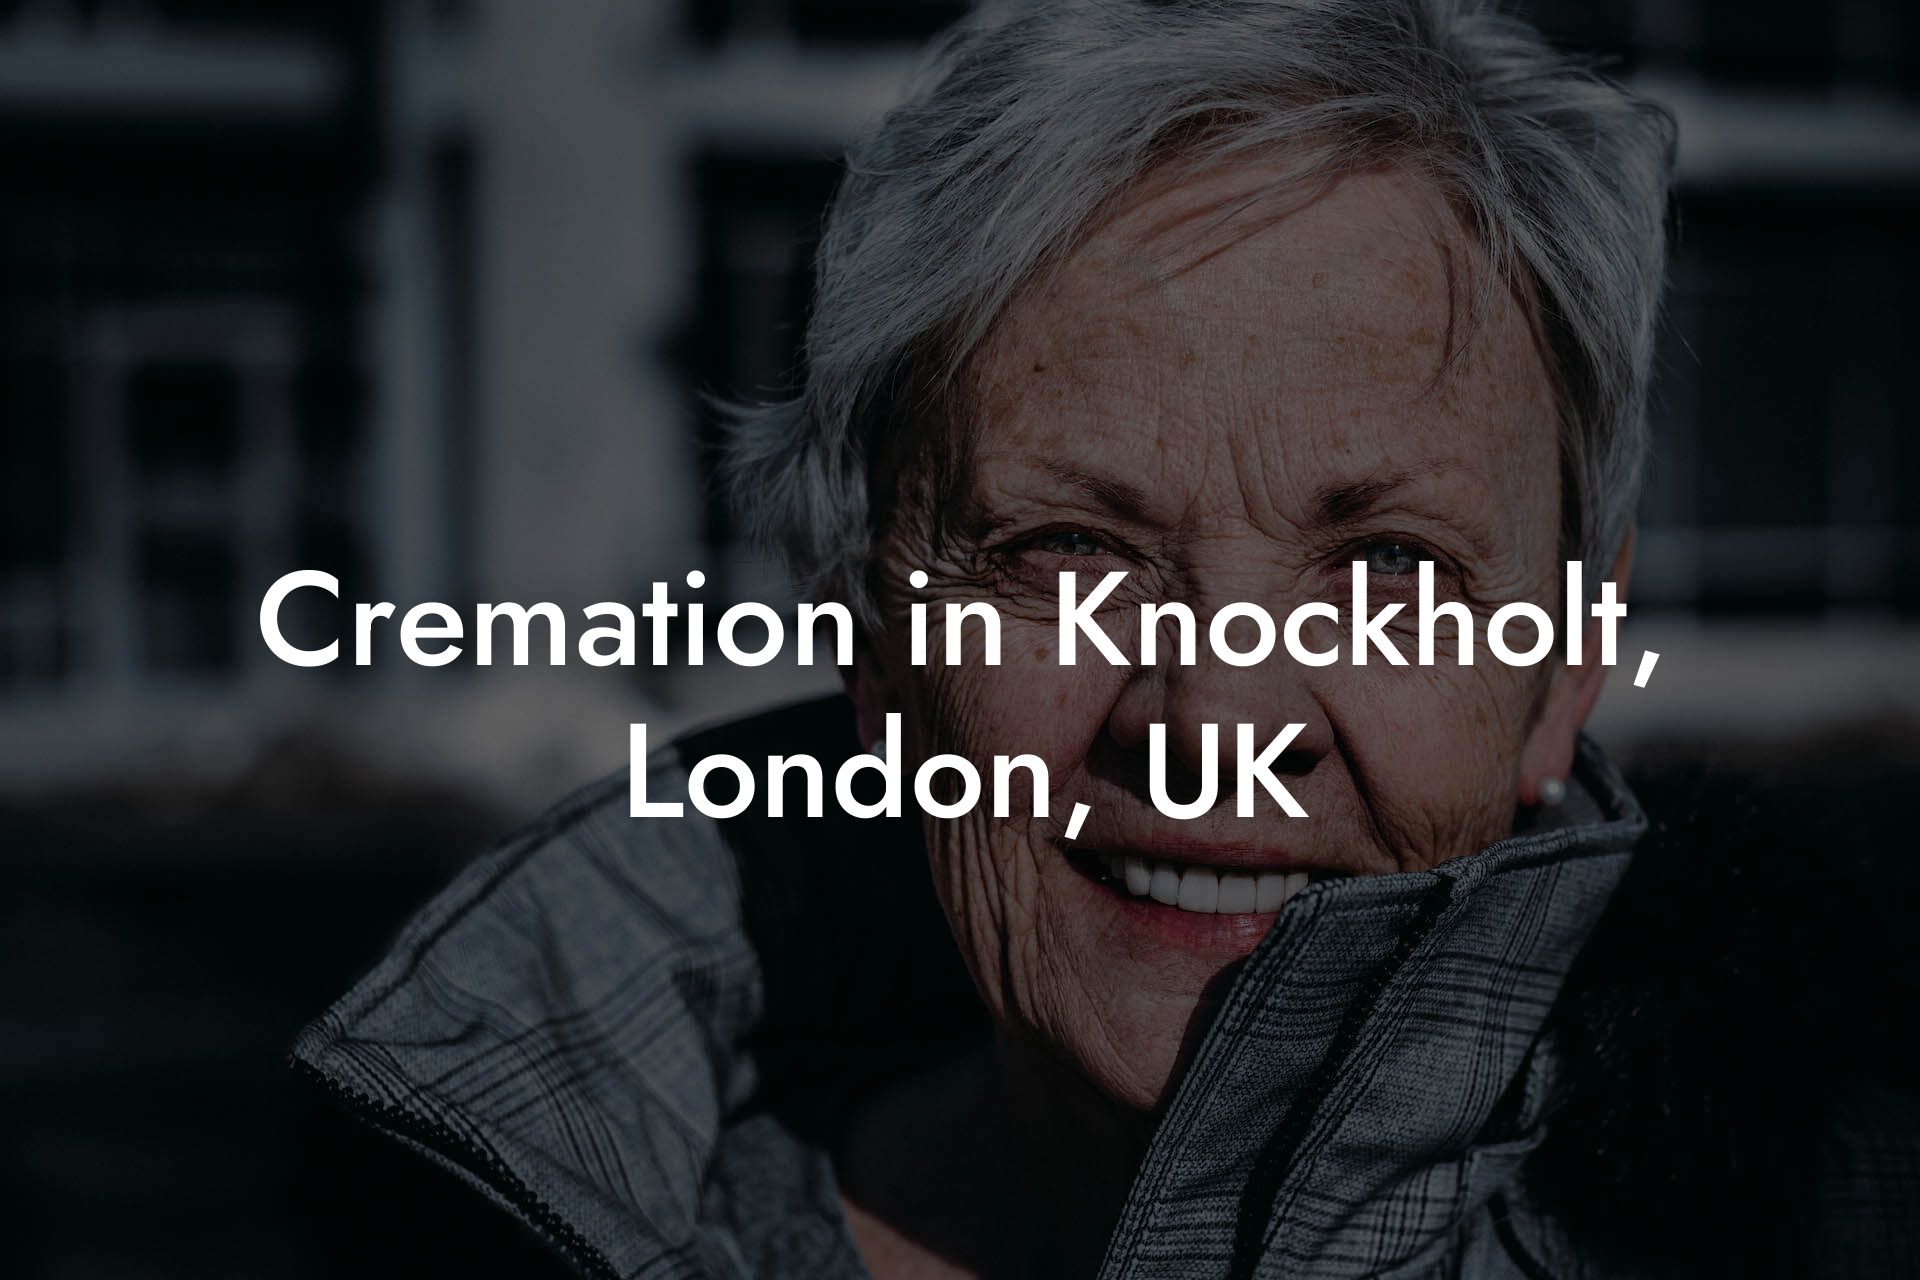 Cremation in Knockholt, London, UK